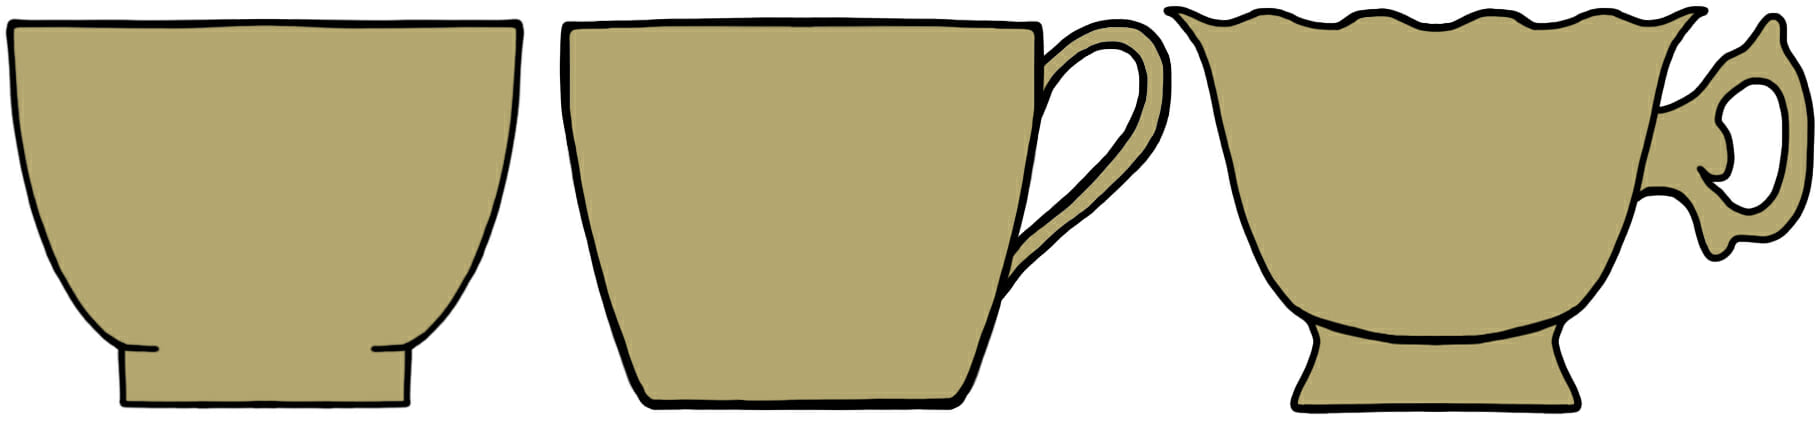 Teacup handle shapes eras factory